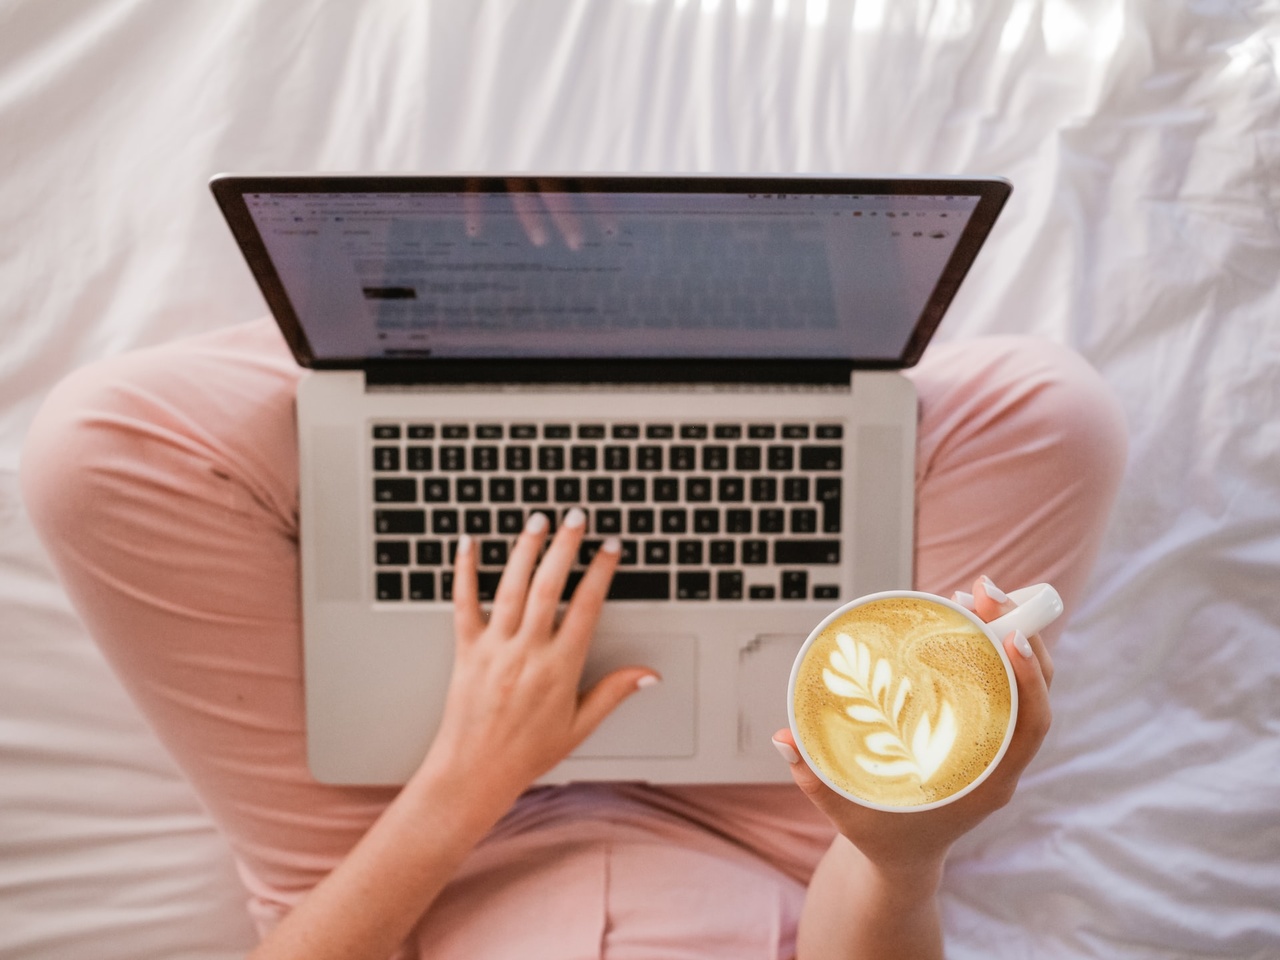 jak pozycjonowac bloga, kobieta siedzaca na lozku z laptopem na nogach, w dloni trzymajaca kawe